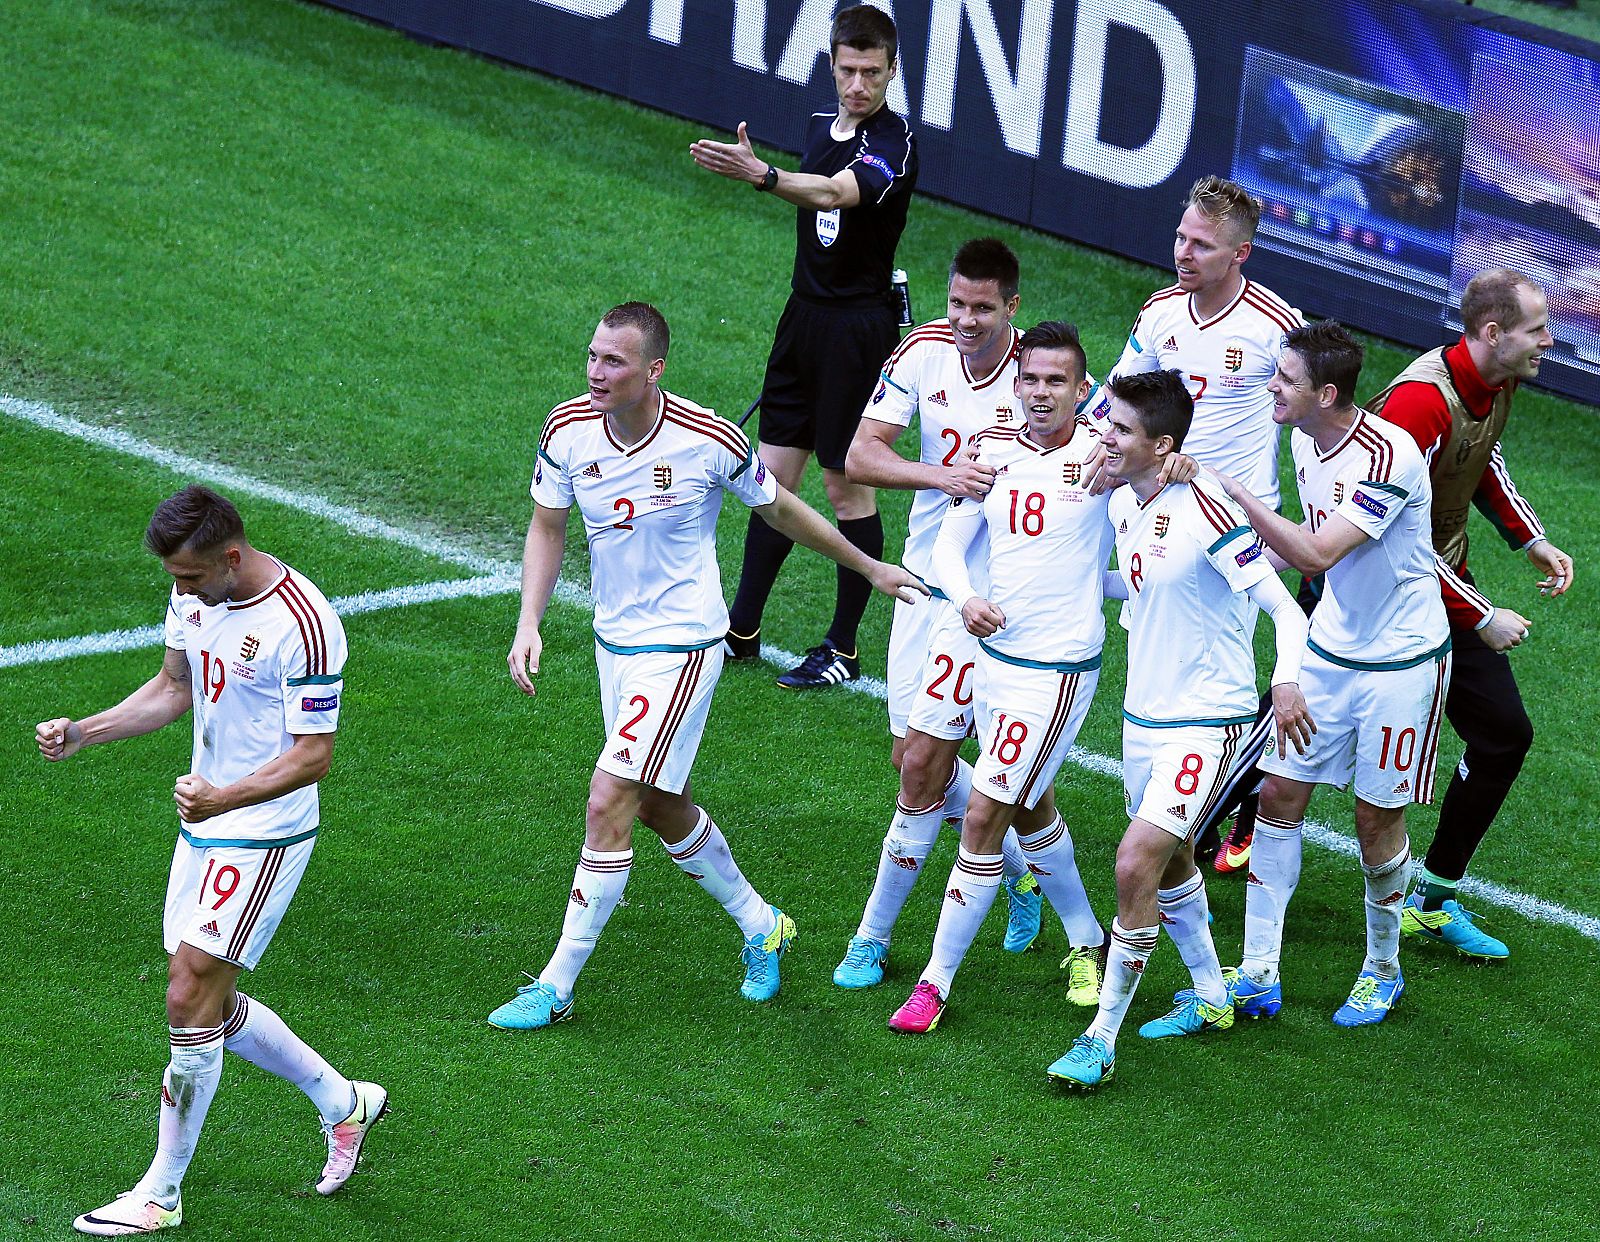 Los húngaron celebran el segundo gol, realizado por Zoltan Stieber.